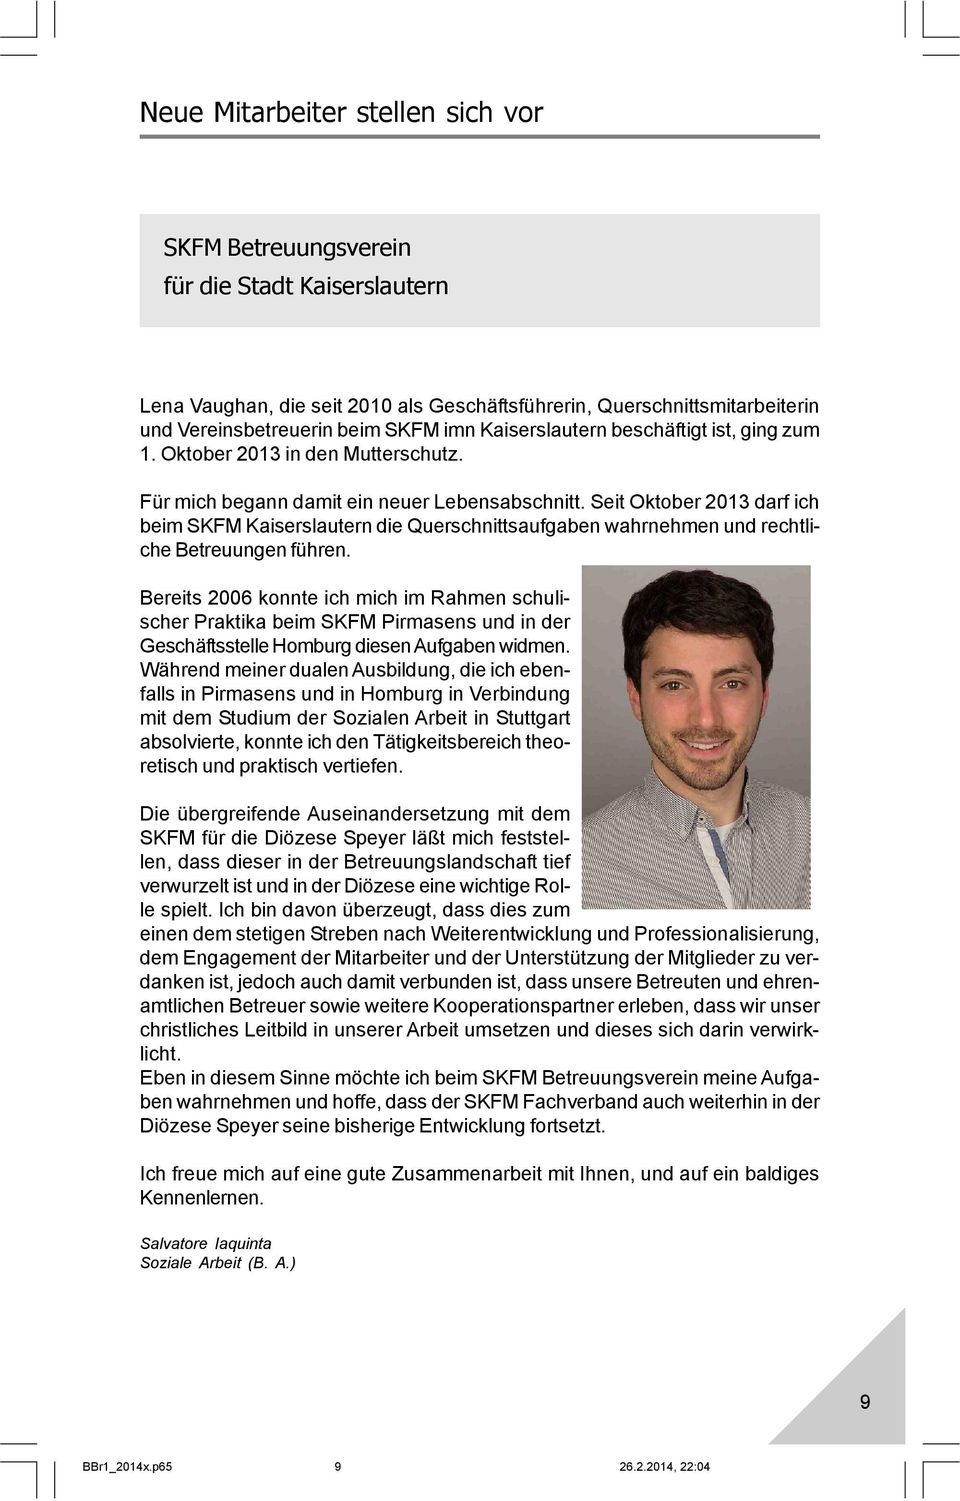 Seit Oktober 2013 darf ich beim SKFM Kaiserslautern die Querschnittsaufgaben wahrnehmen und rechtliche Betreuungen führen.